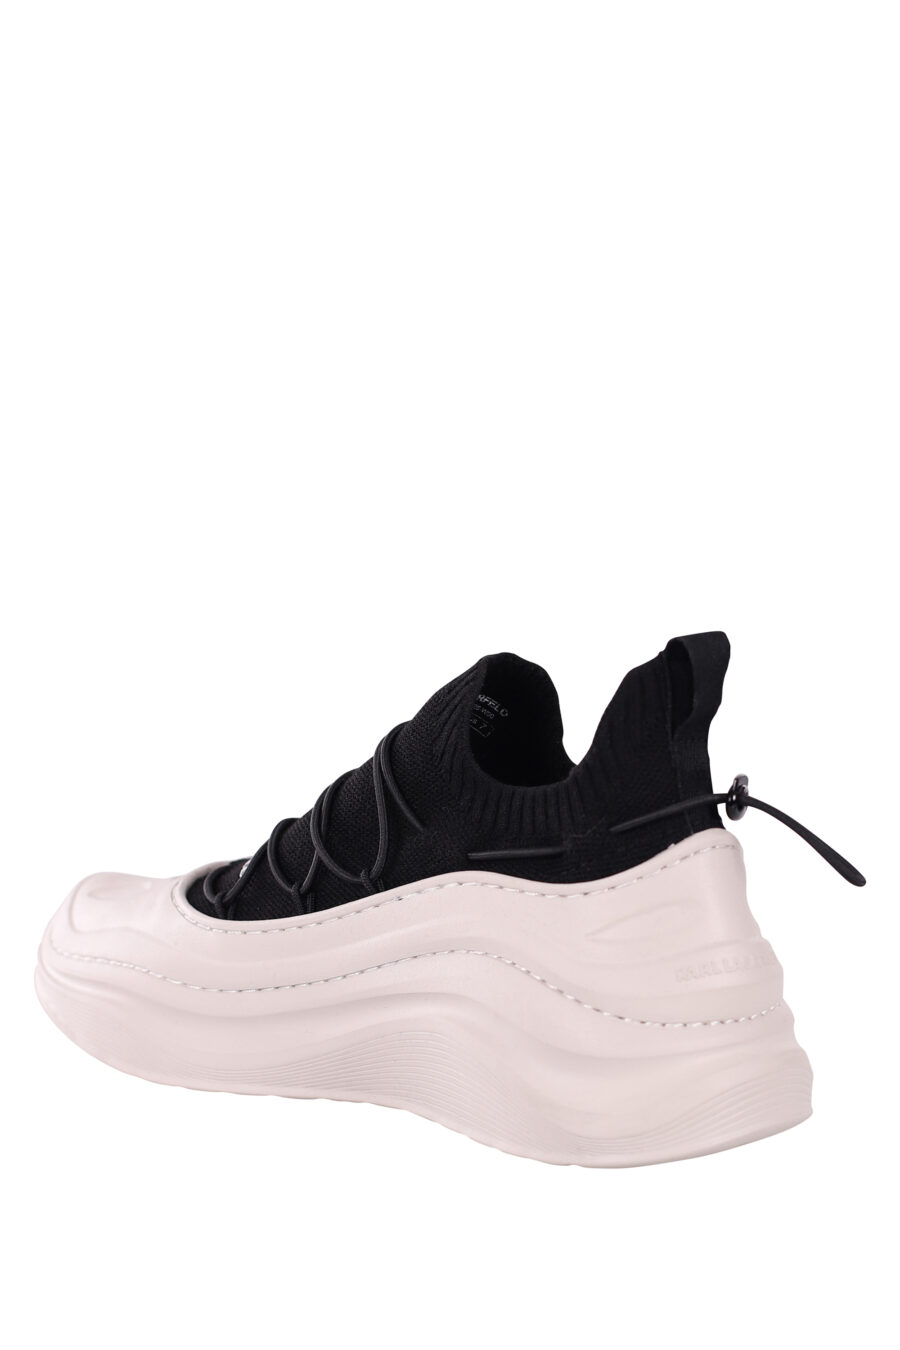 Zapatillas bicolor blancas y negras con suela blanca ondulada - IMG 5877